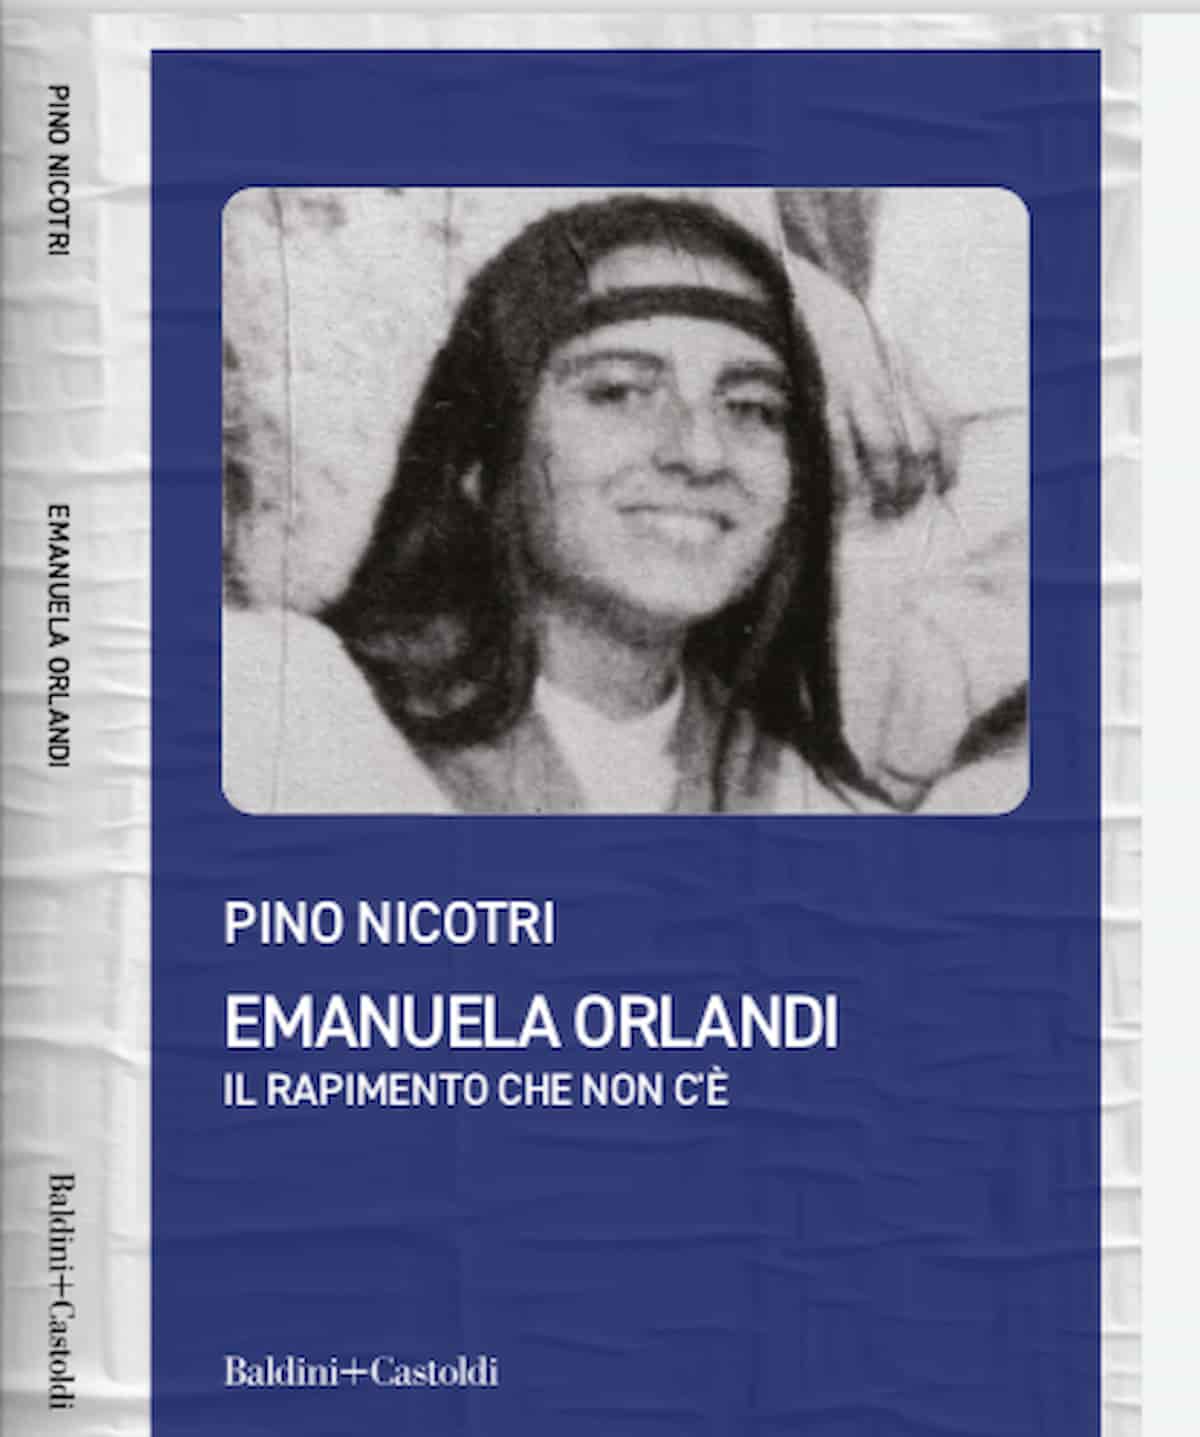 Emanuela Orlandi non fu rapita dai turchi, Pino Nicotri chiude e chiede chi fu? Mistero insoluto da 40 anni